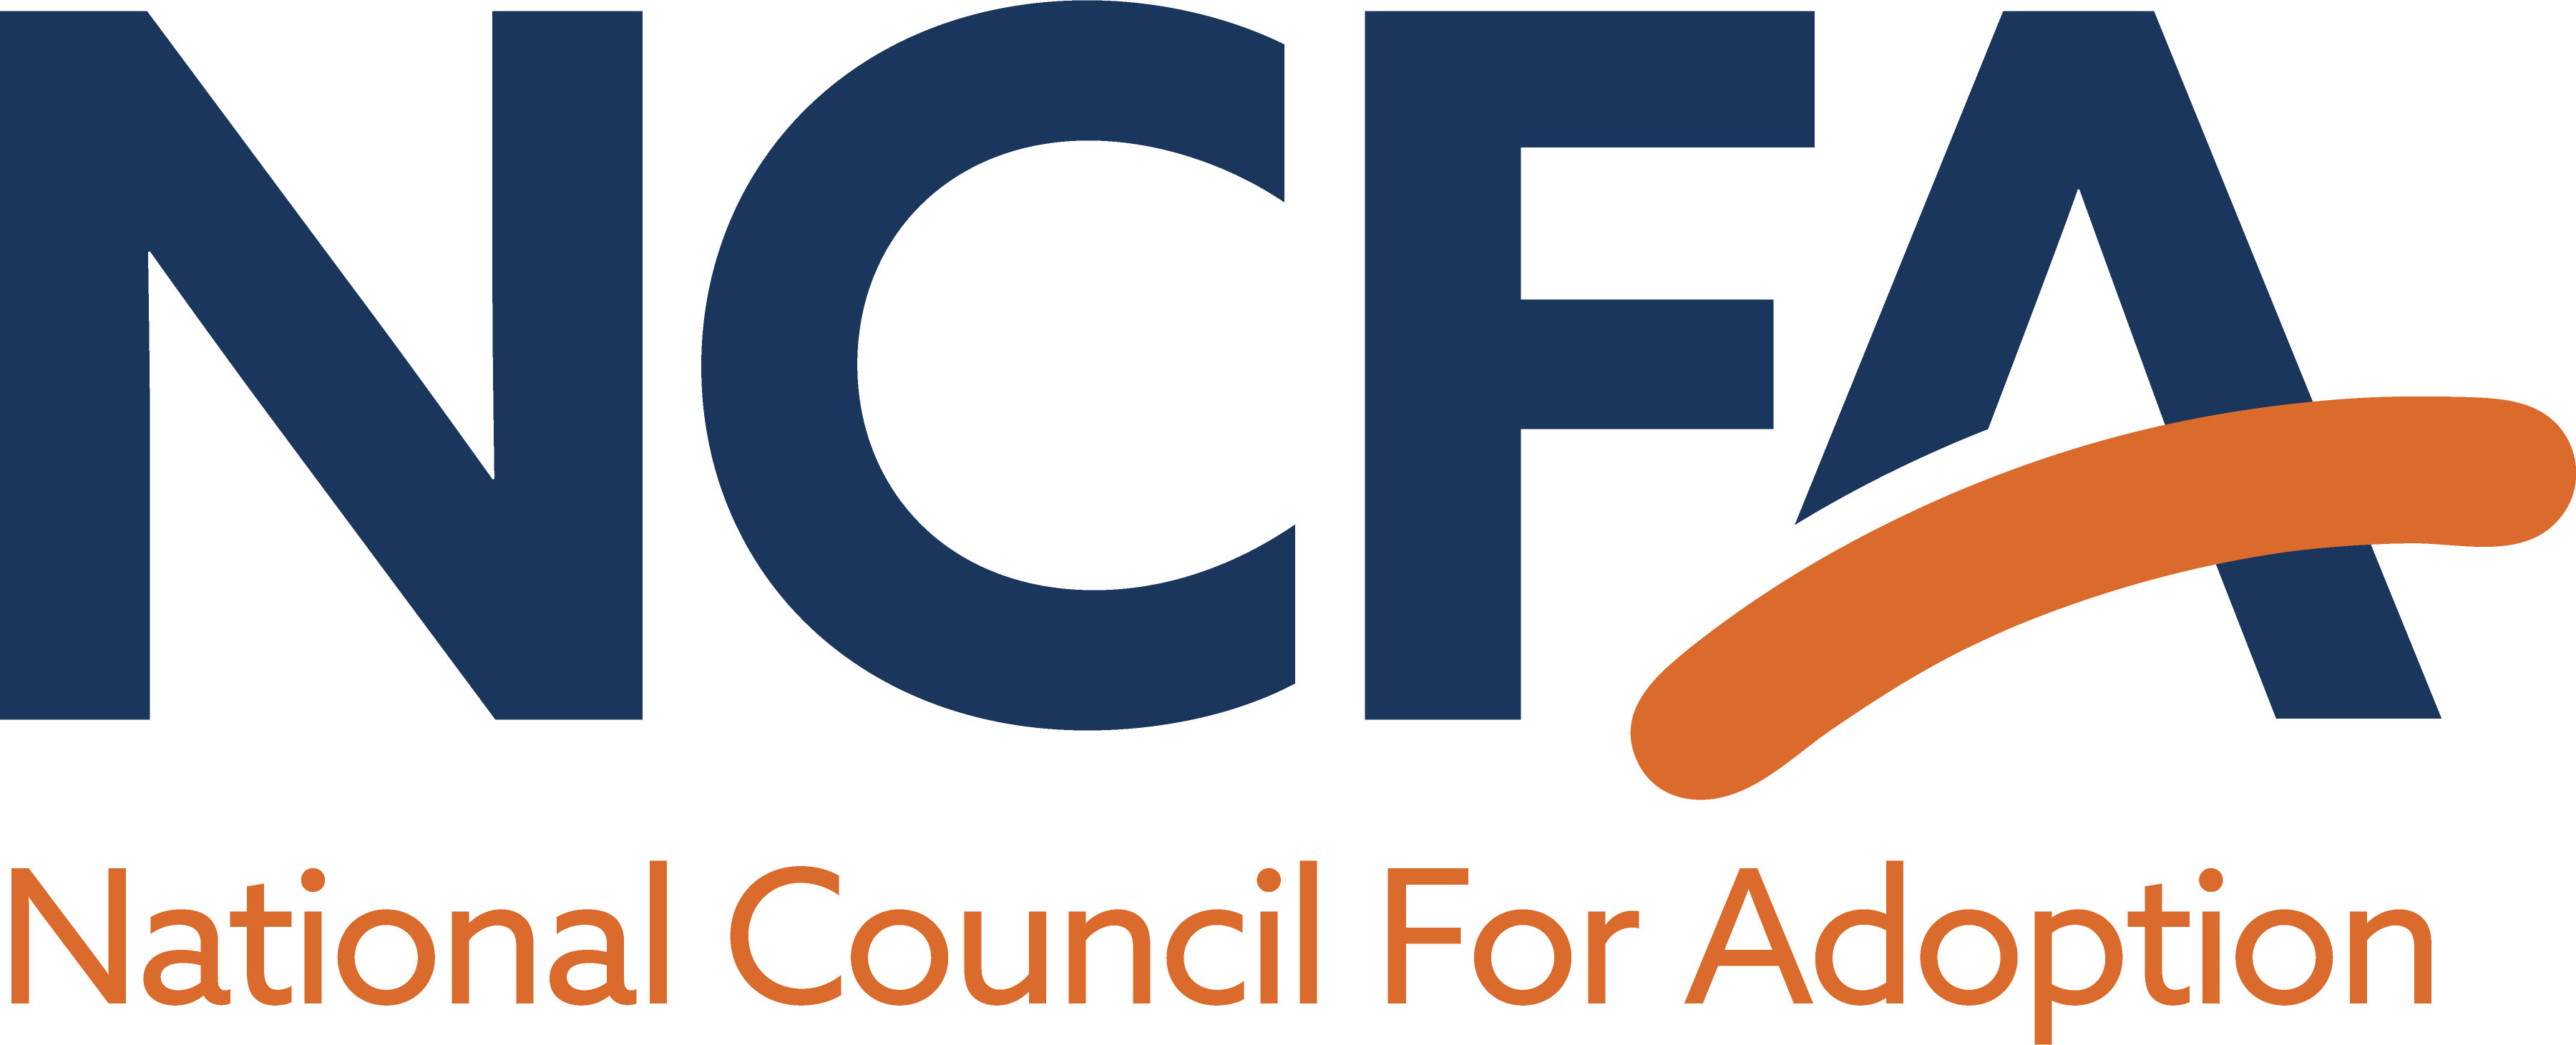 National Council For Adoption logo